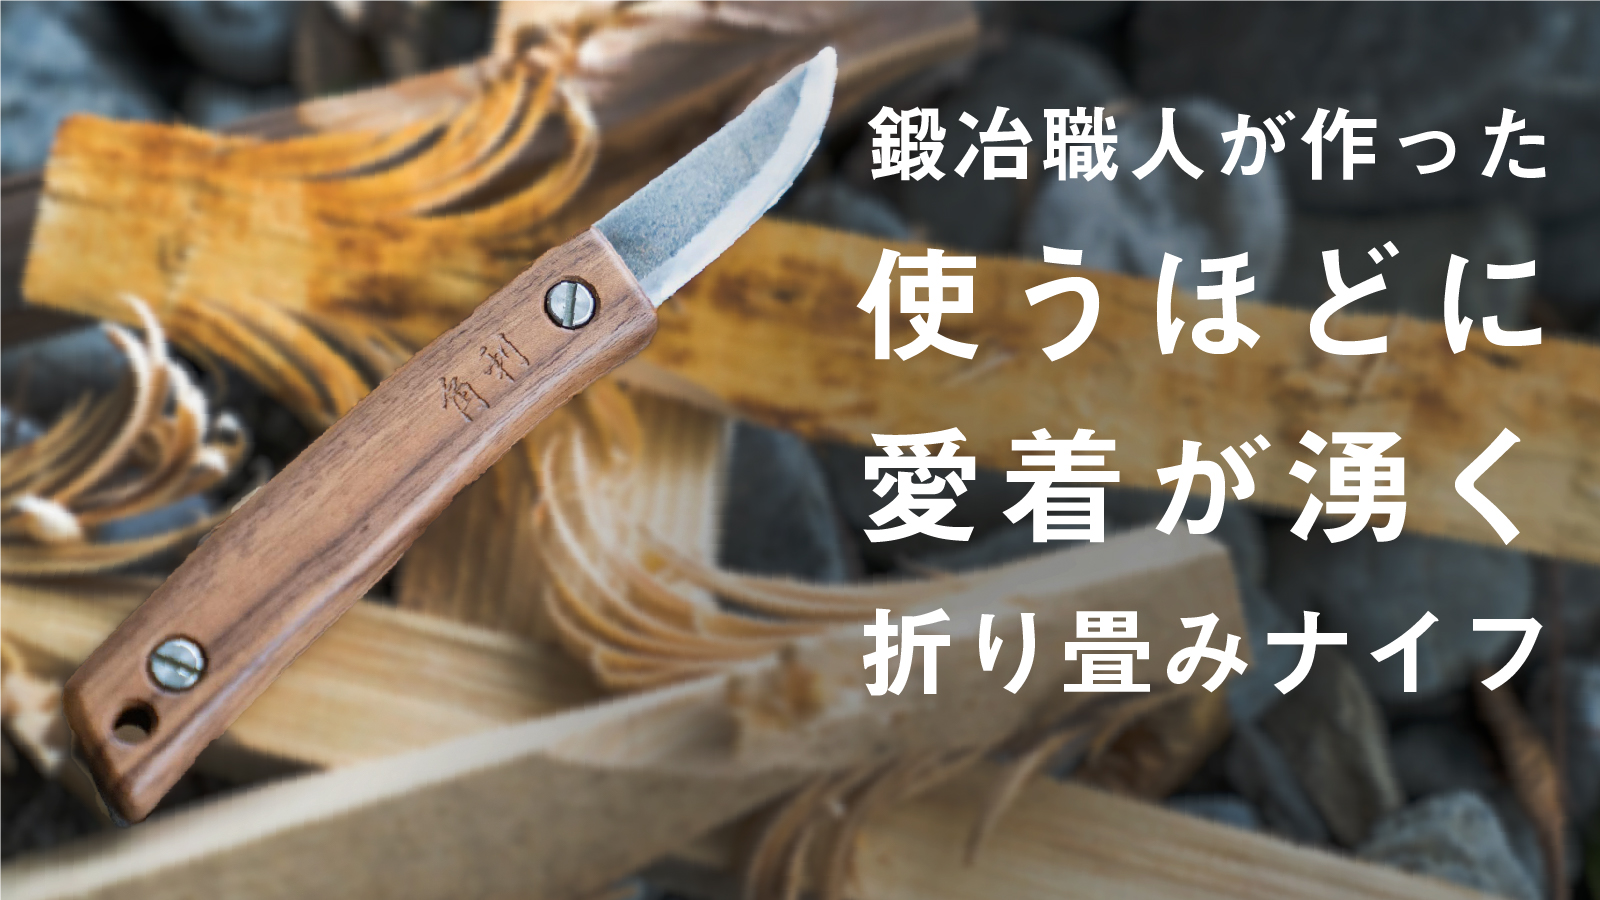 伝統工芸士の鍛冶職人がつくる アウトドアナイフ Makuakeにて発売開始 ニューワールド株式会社のプレスリリース